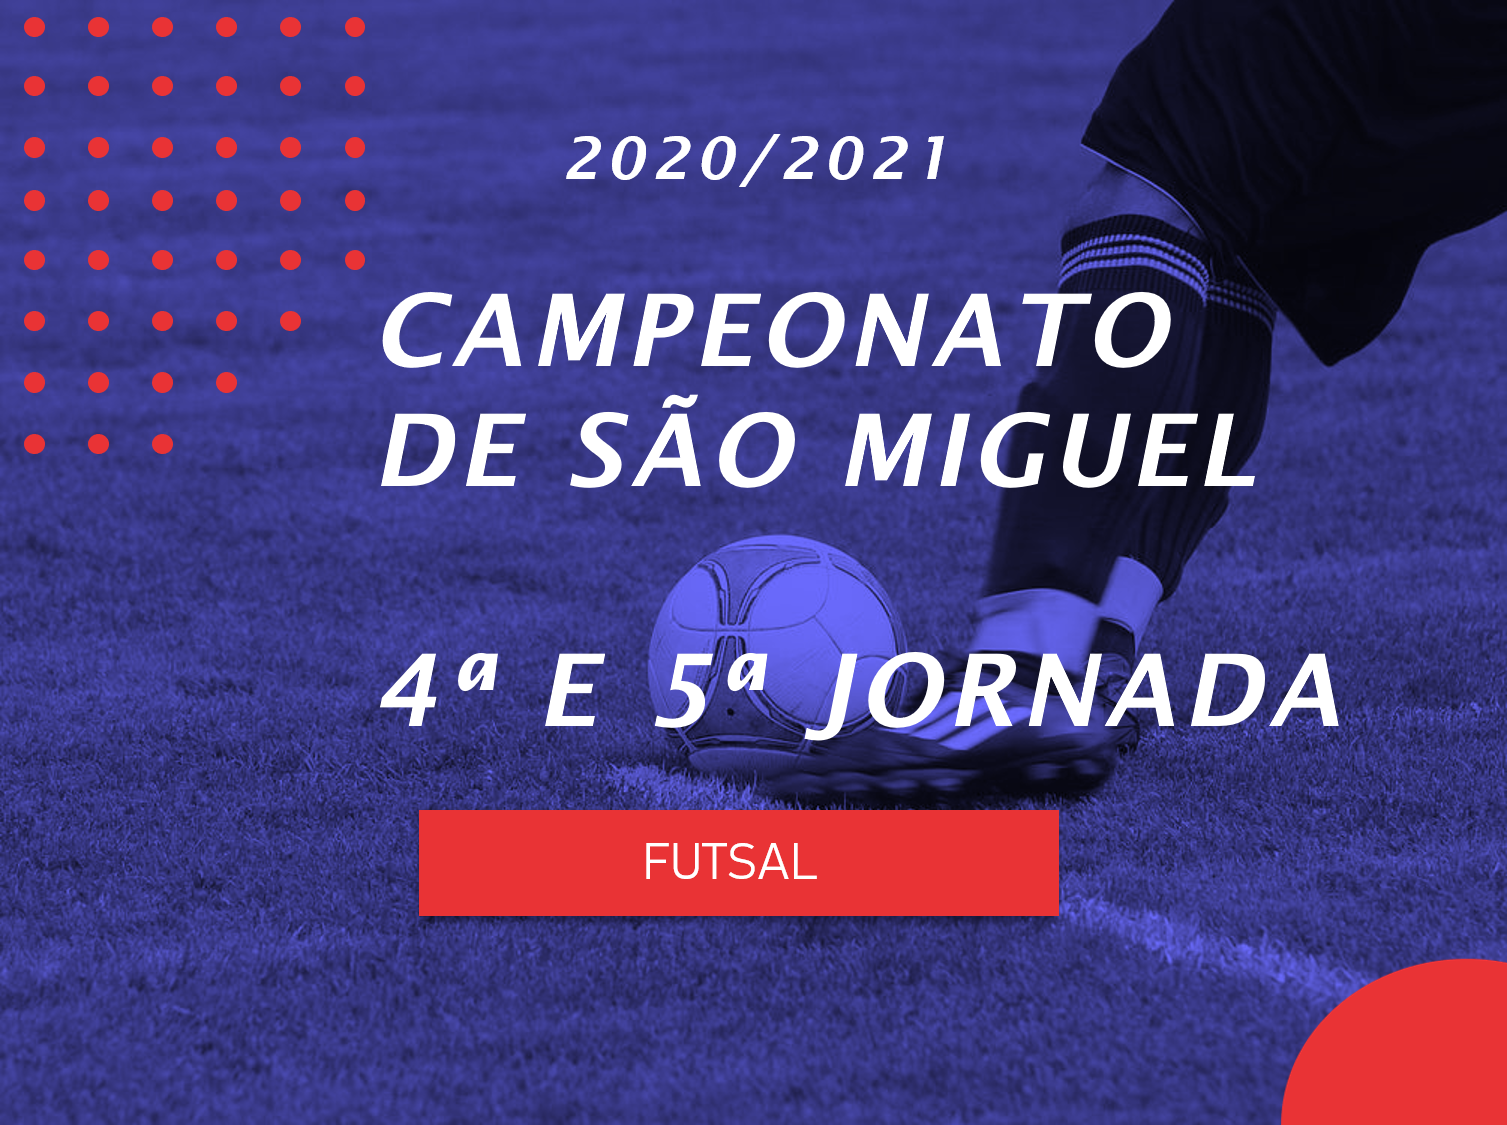 Campeonato de São Miguel - 4ª e 5ª Jornada - Futsal - Antevisão